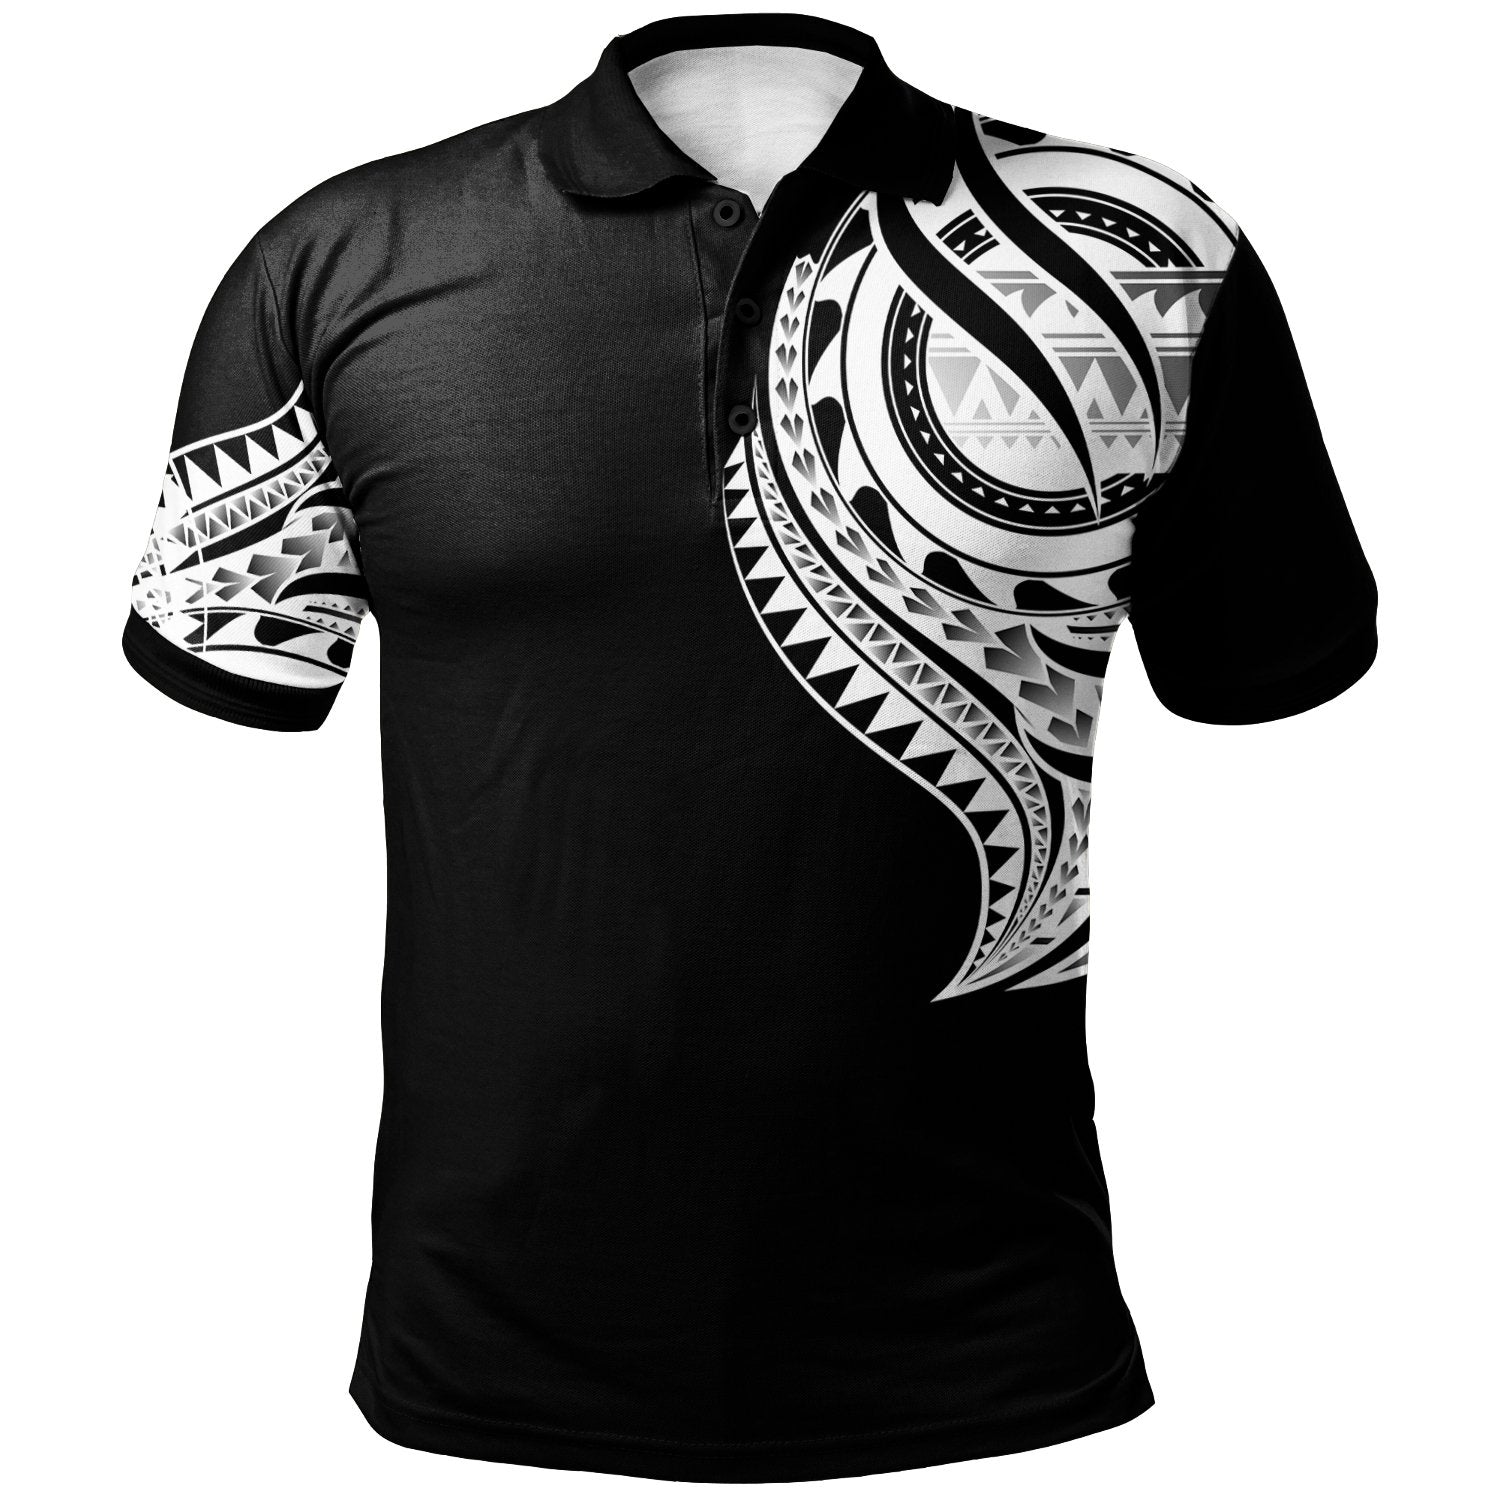 Tokelau Polo Shirt Tokelauan Tatau White Patterns With Coat Of Arms Unisex Black - Polynesian Pride